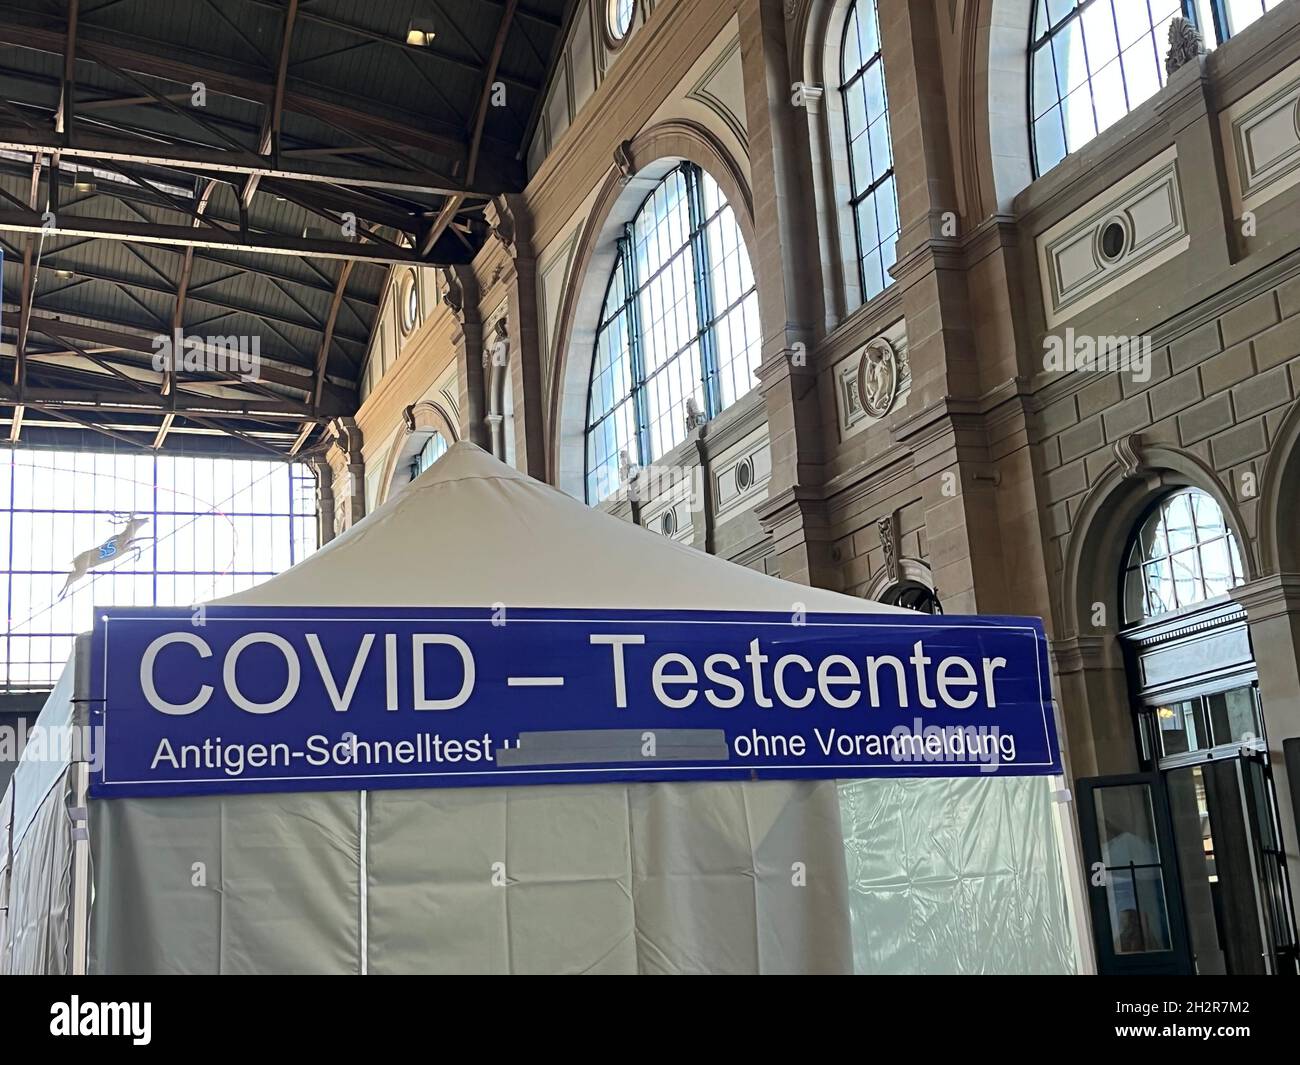 Centre de test Covid sur la gare principale de Zurich.L'inscription en allemand indique qu'aucun rendez-vous n'est nécessaire pour le test d'antigène de vitesse.Détails. Banque D'Images